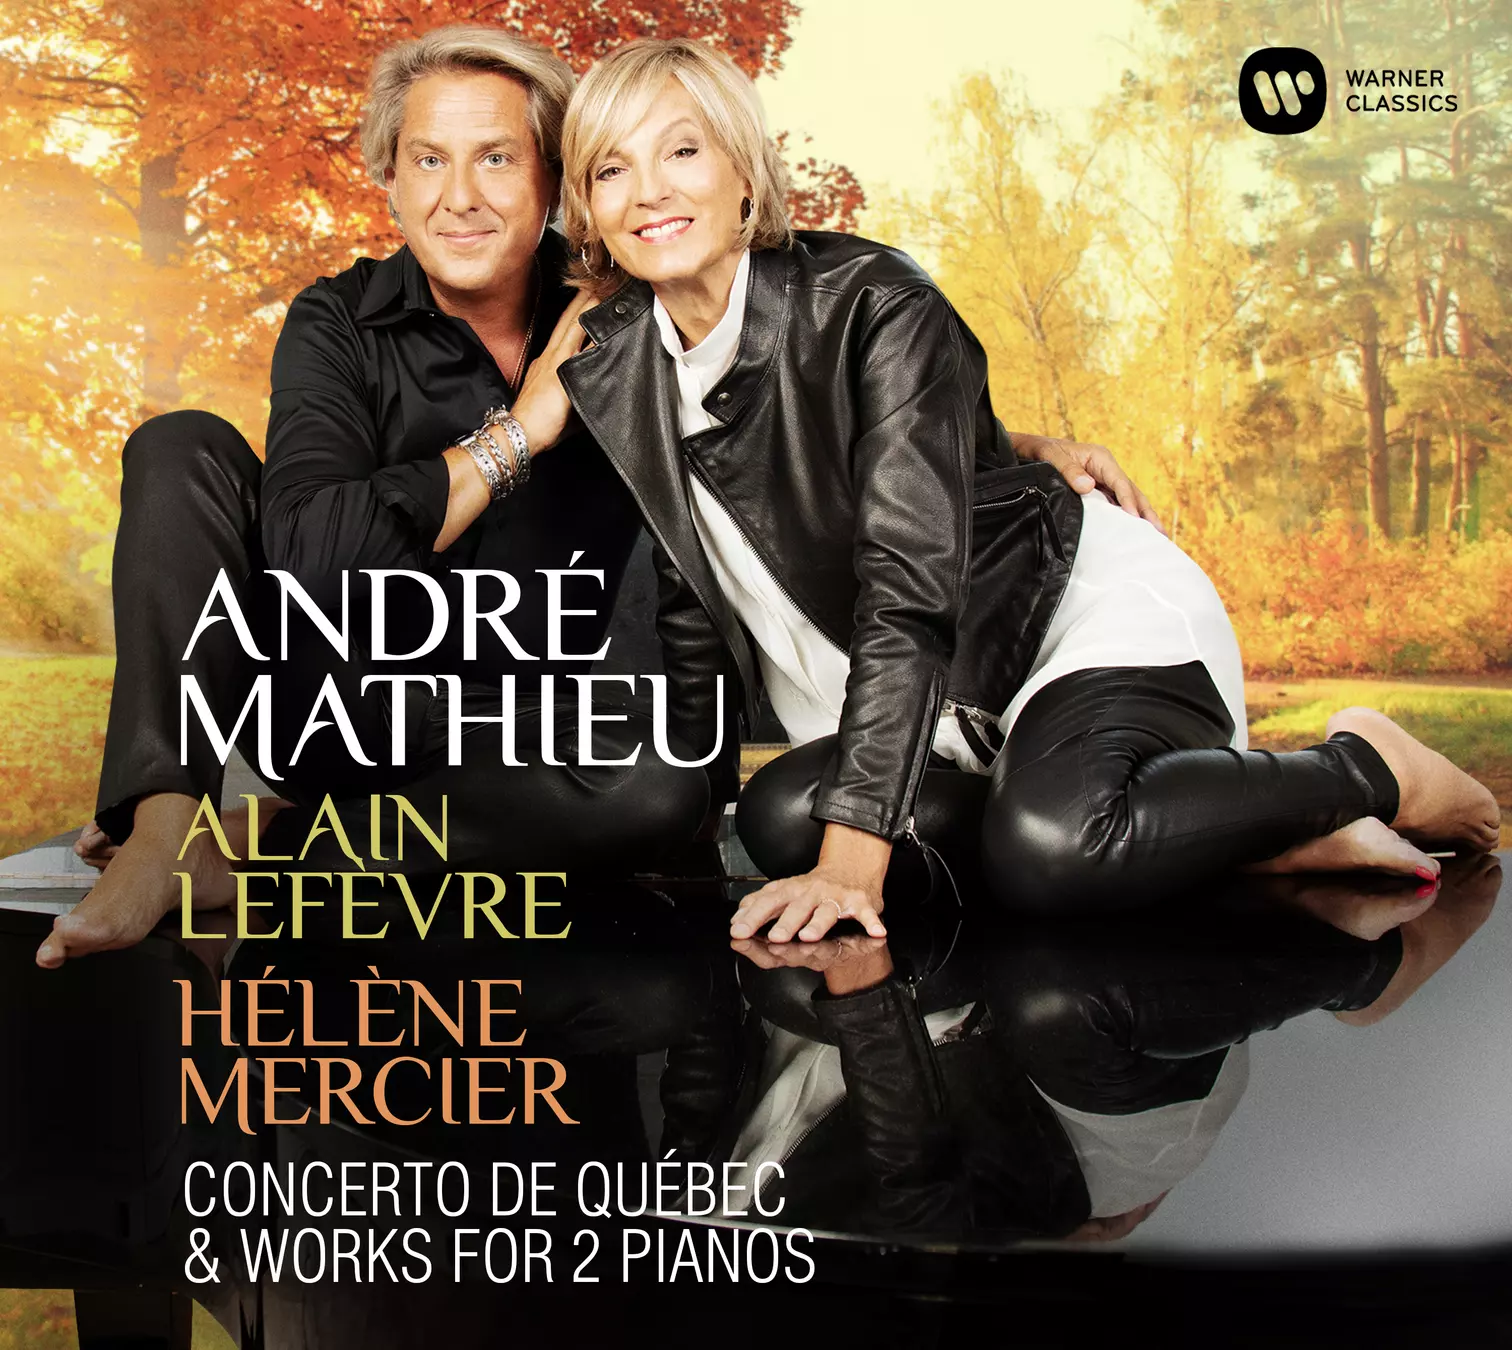 André Mathieu: Concerto de Québec & Works for 2 Pianos